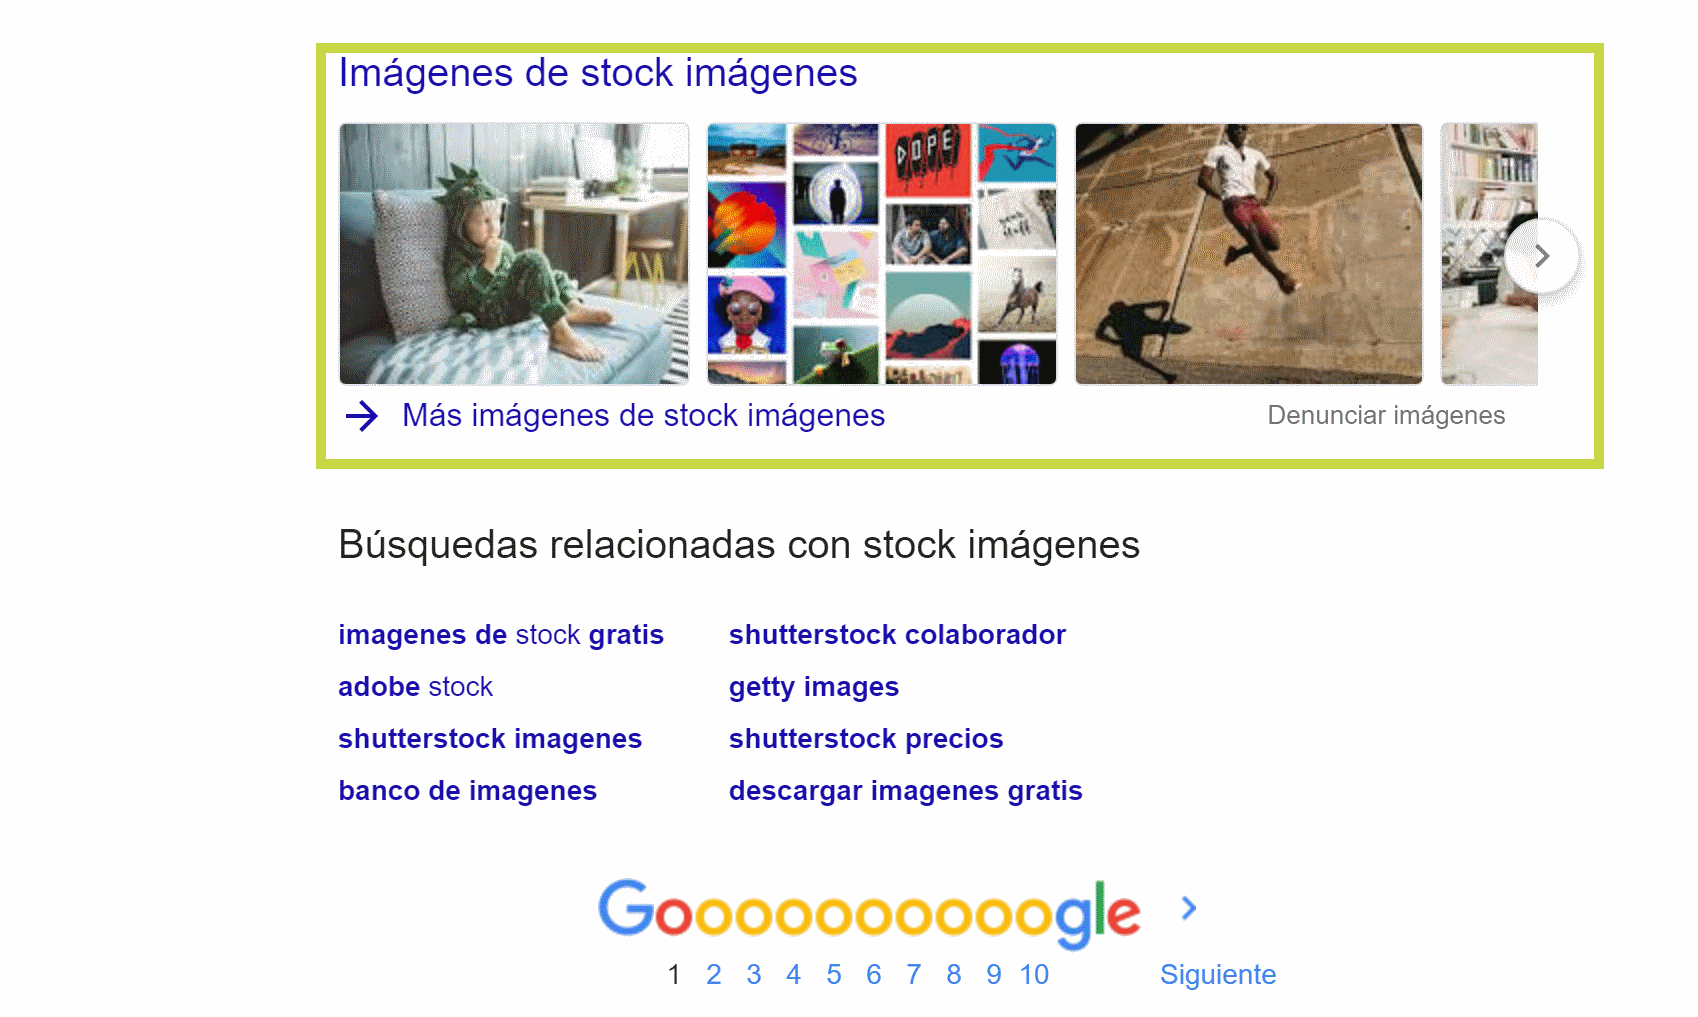 Imágenes de universal search tras realizar la búsqueda Stock imágenes en Google.es